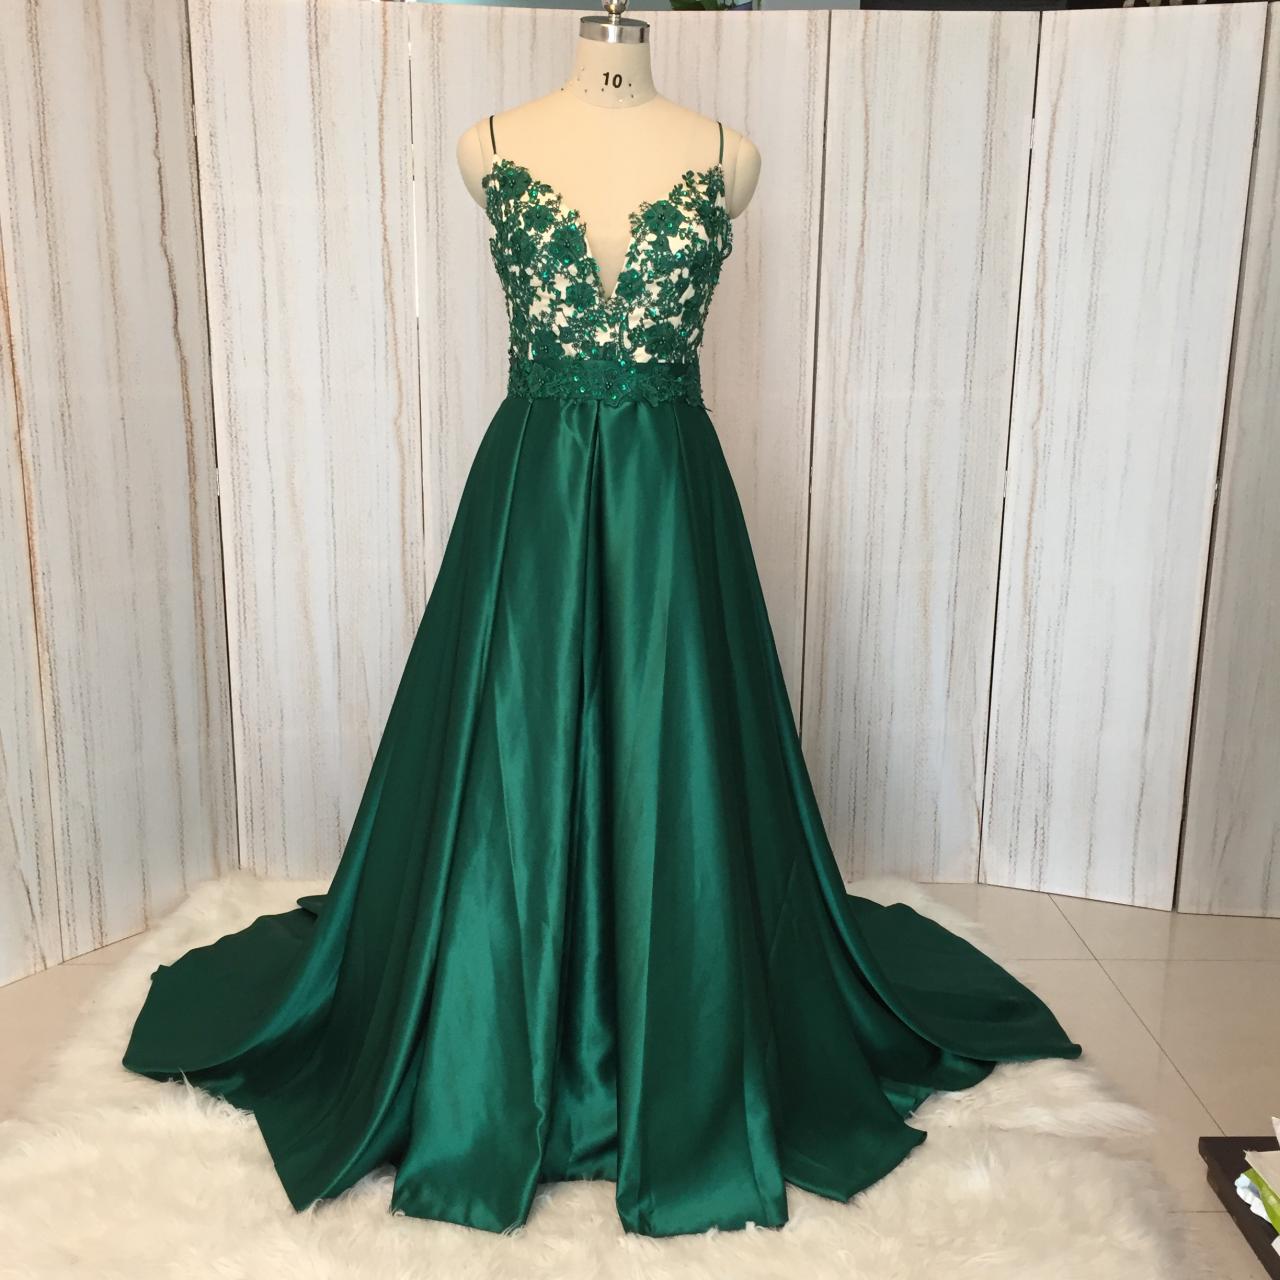 Spaghetti Strap Green Prom Dresses A Line Satin Lace Applique Beaded Elegant Prom Gown Vestidos De Fiesta